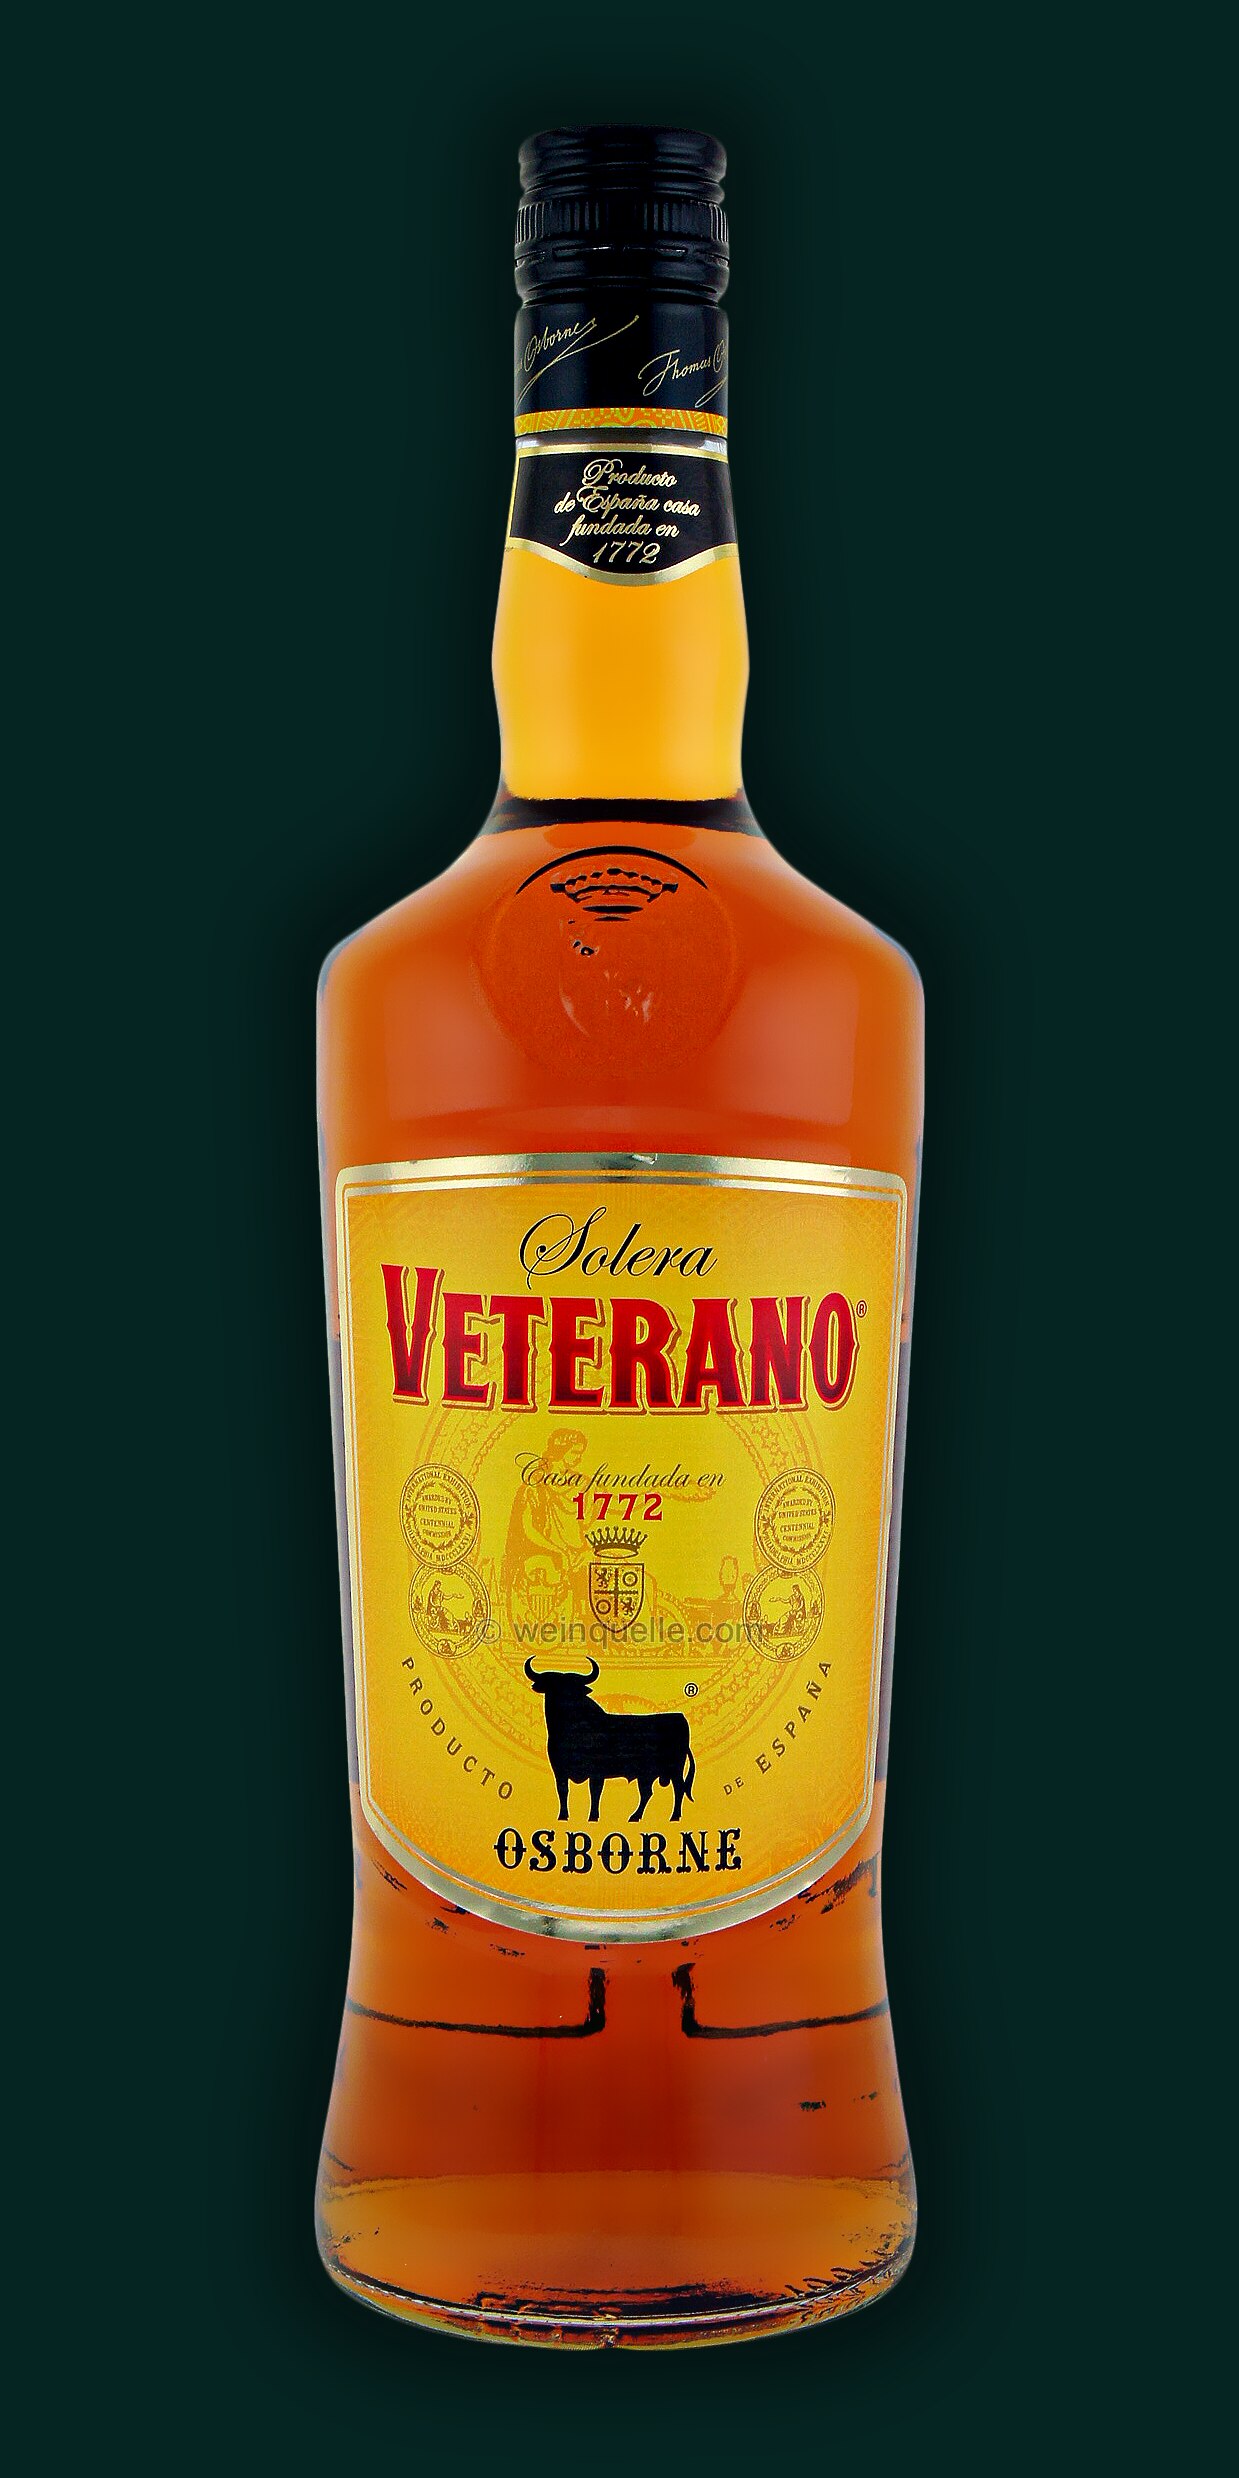 Weinquelle Spirituose Spanische 1,0 Veterano - Liter Lühmann Osborne